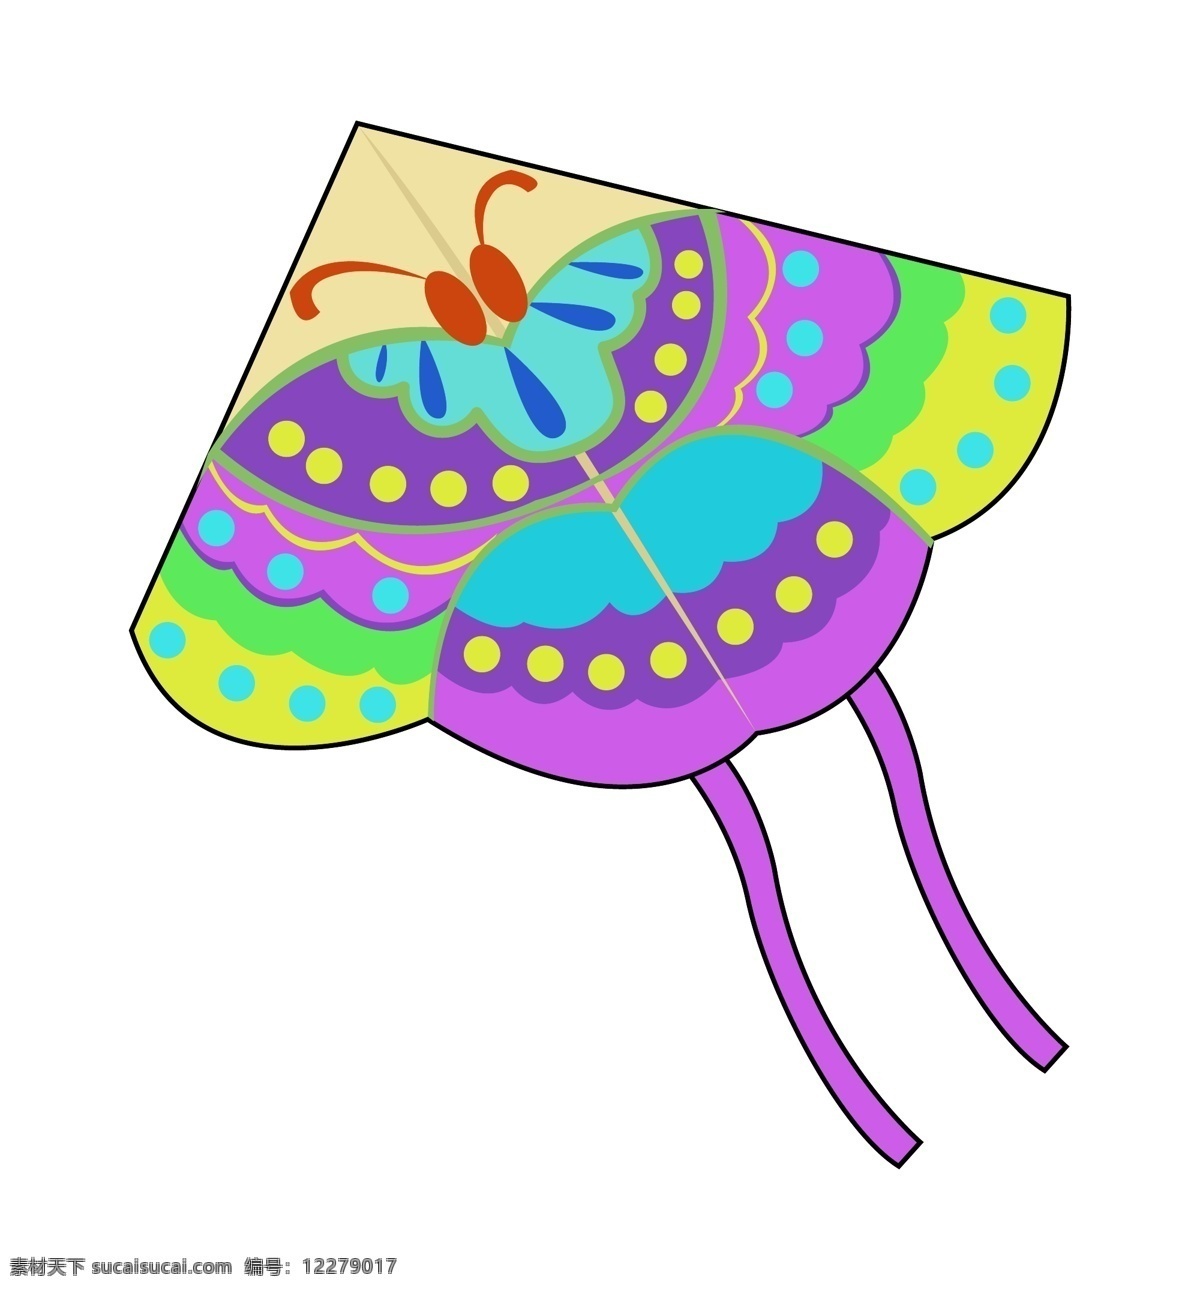 手绘 大 蝴蝶 风筝 插画 漂亮的蝴蝶 卡通插画 手绘风筝插画 漂亮的风筝 粉色的尾巴 飘荡的风筝